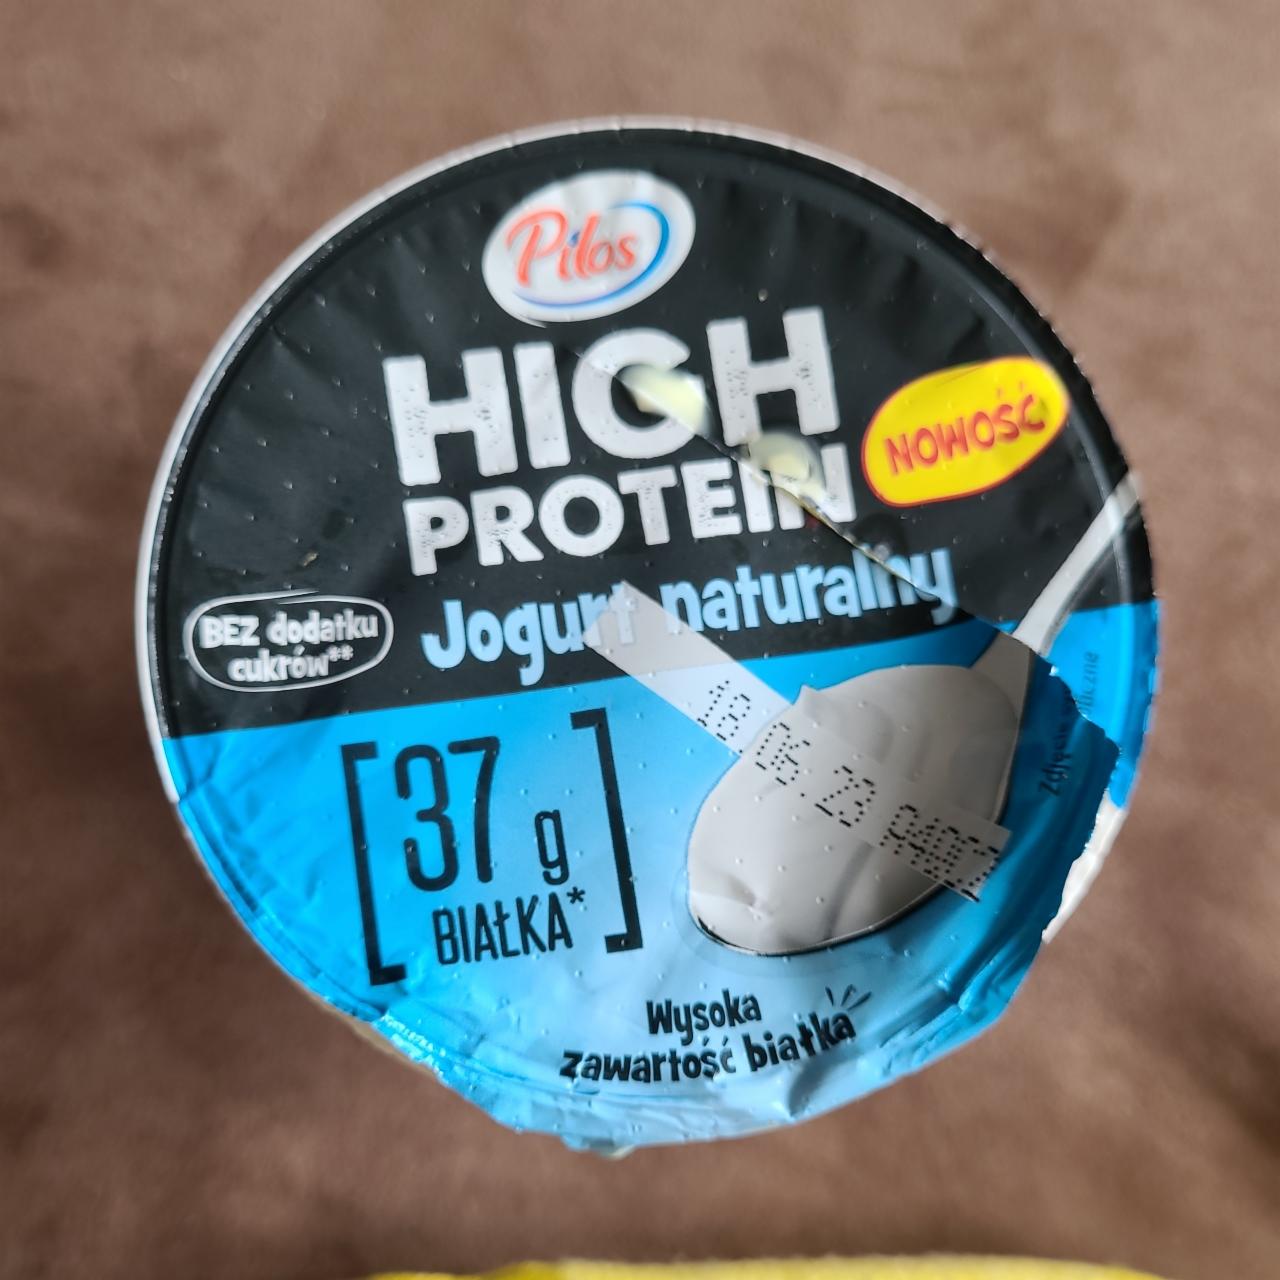 Фото - Йогурт натуральный протеиновый High Protein Jogurt Pilos